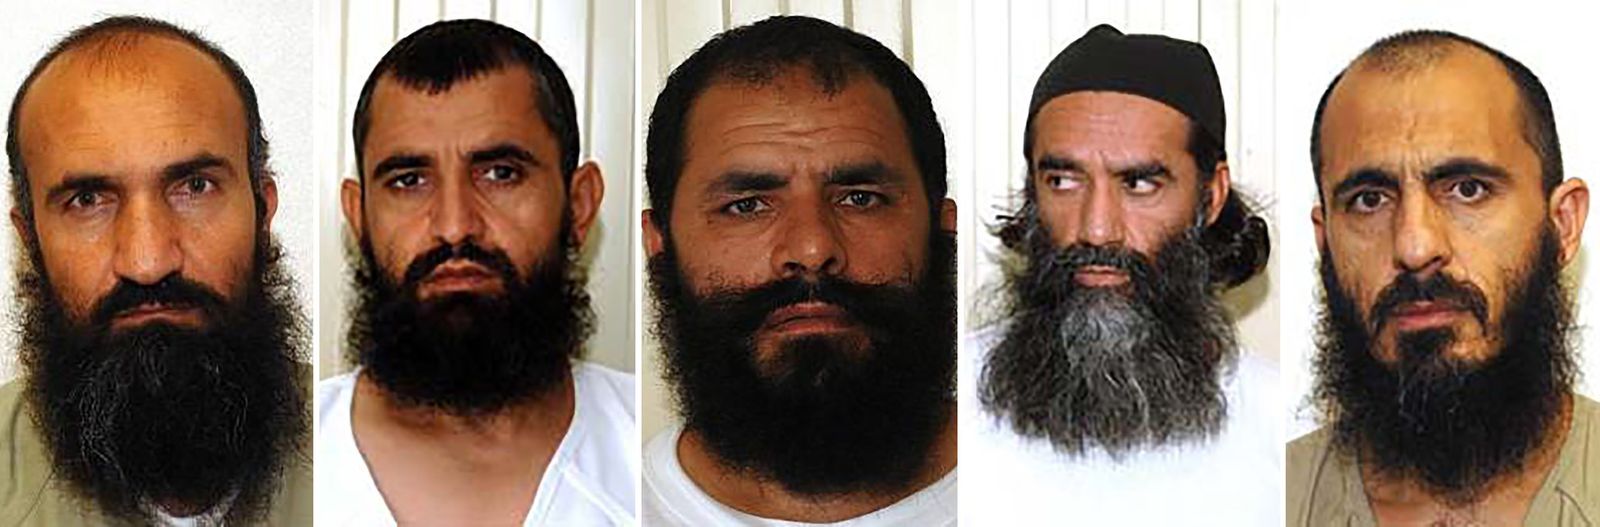 عدد من قادة طالبان كانوا معتقلين في غوانتانامو، من بينهم عبد الحق الواثق (الثاني من اليسار) - www.nytimes.com